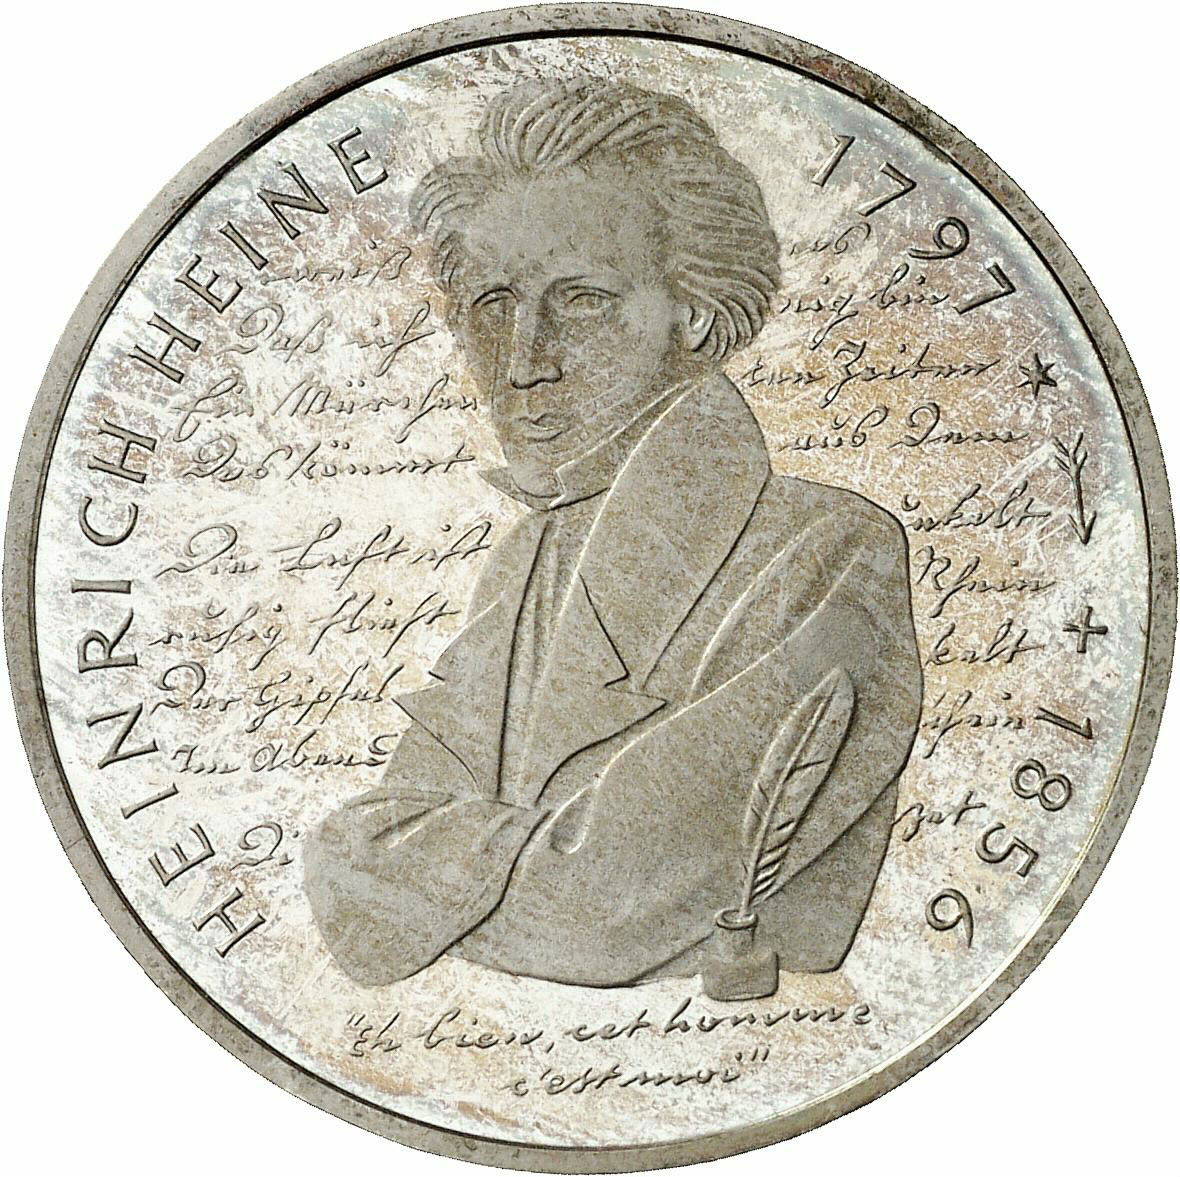 DE 10 Deutsche Mark 1997 J